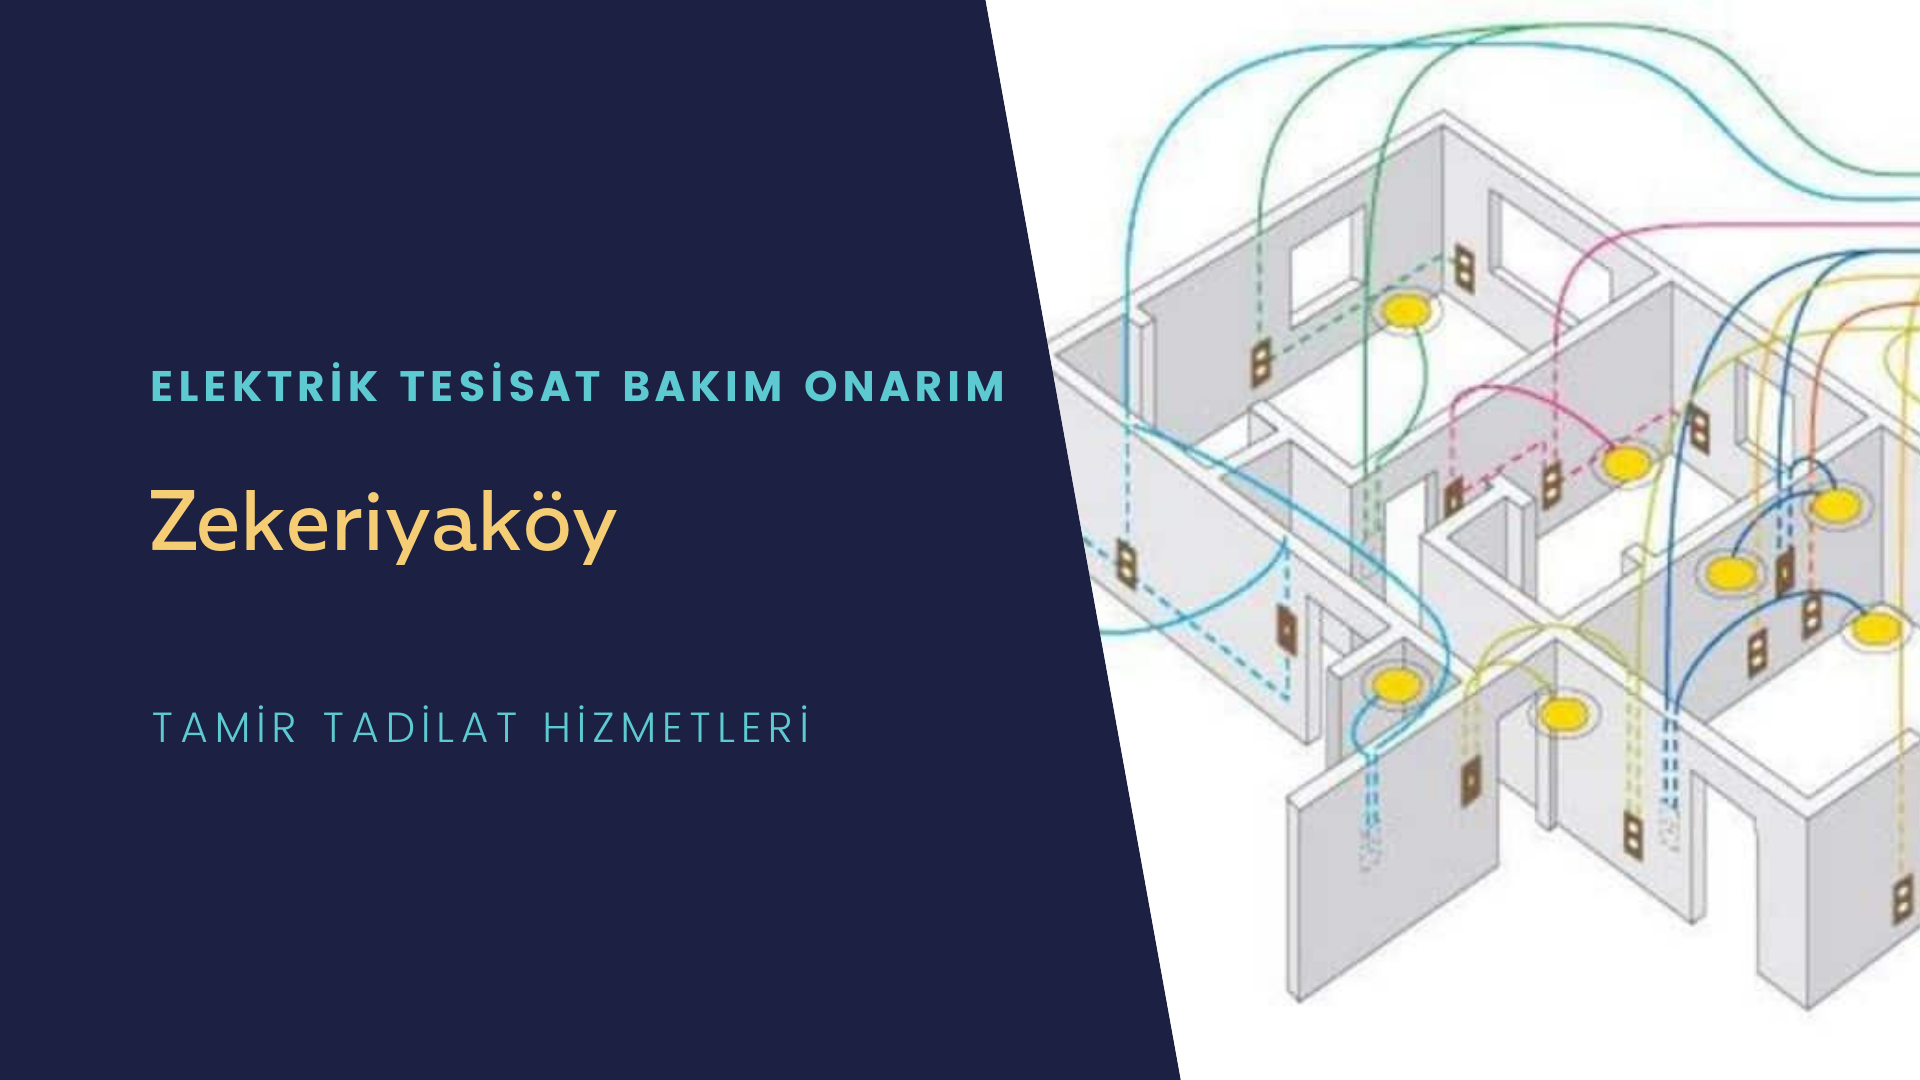 Zekeriyaköy'de elektrik tesisatı ustalarımı arıyorsunuz doğru adrestenizi Zekeriyaköy elektrik tesisatı ustalarımız 7/24 sizlere hizmet vermekten mutluluk duyar.